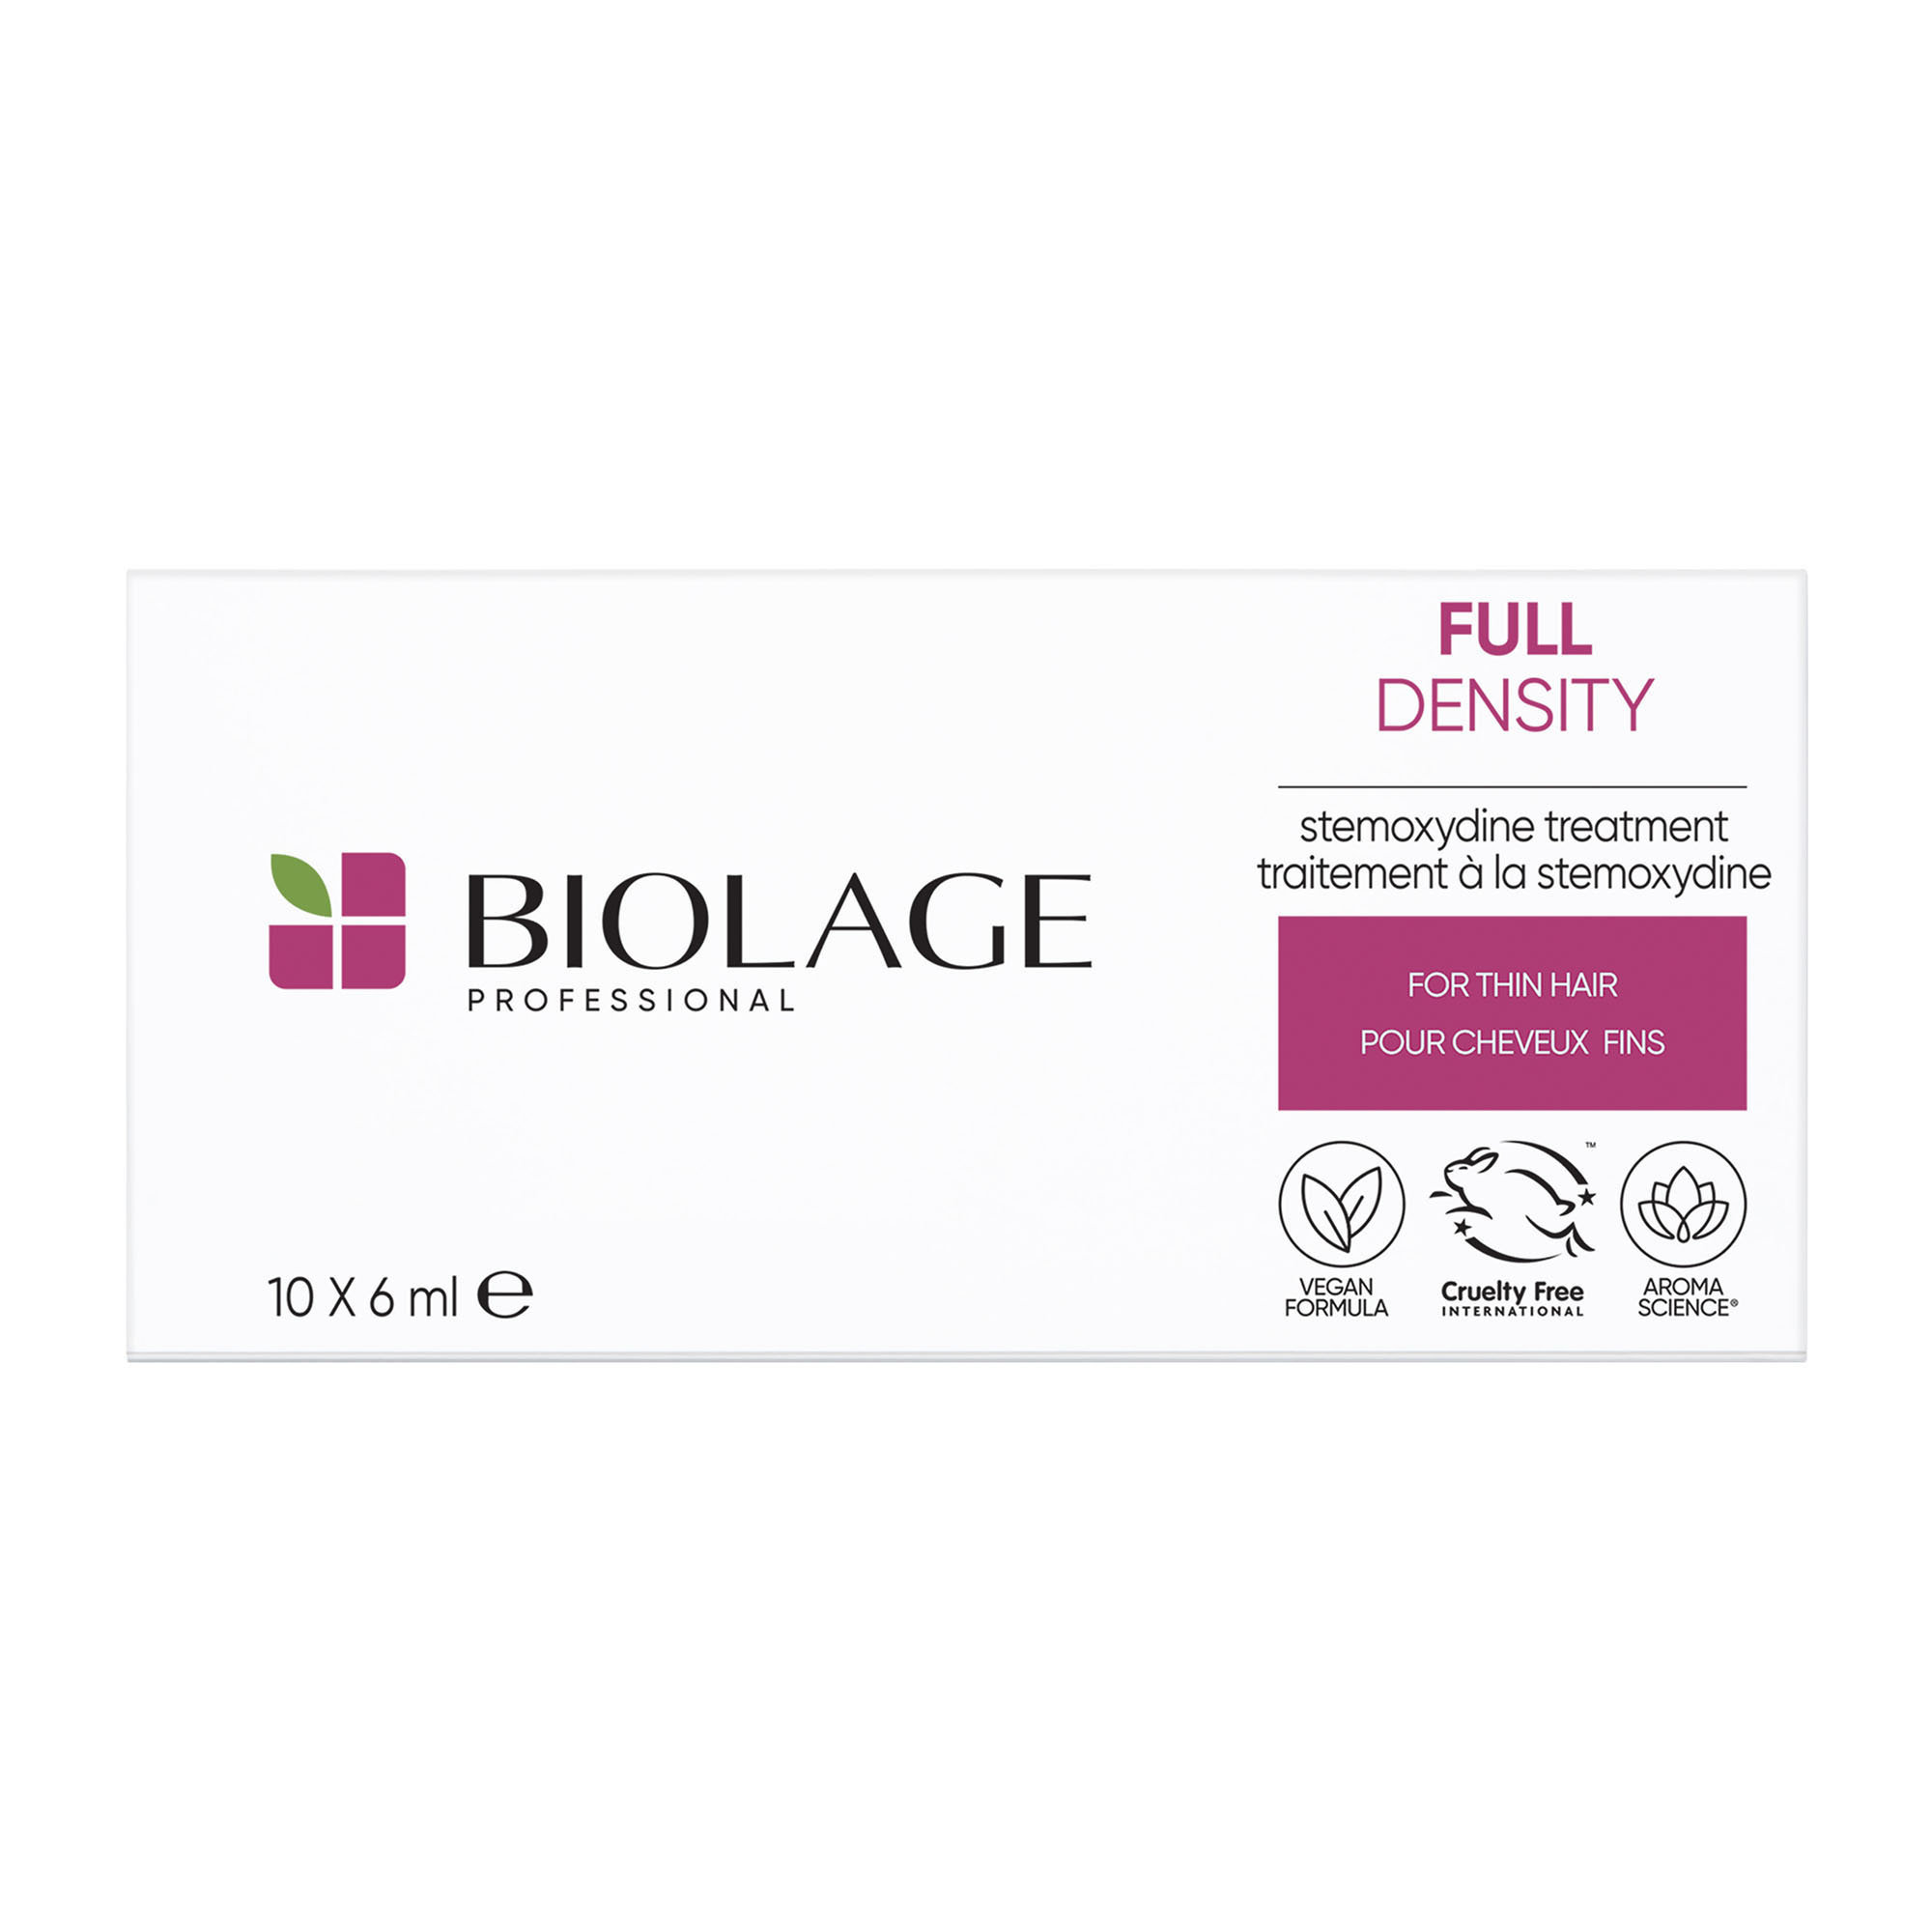 Biolage Kúra pro řídnoucí vlasy Full Density (Stemoxydine Treatment) 10 x 6 ml